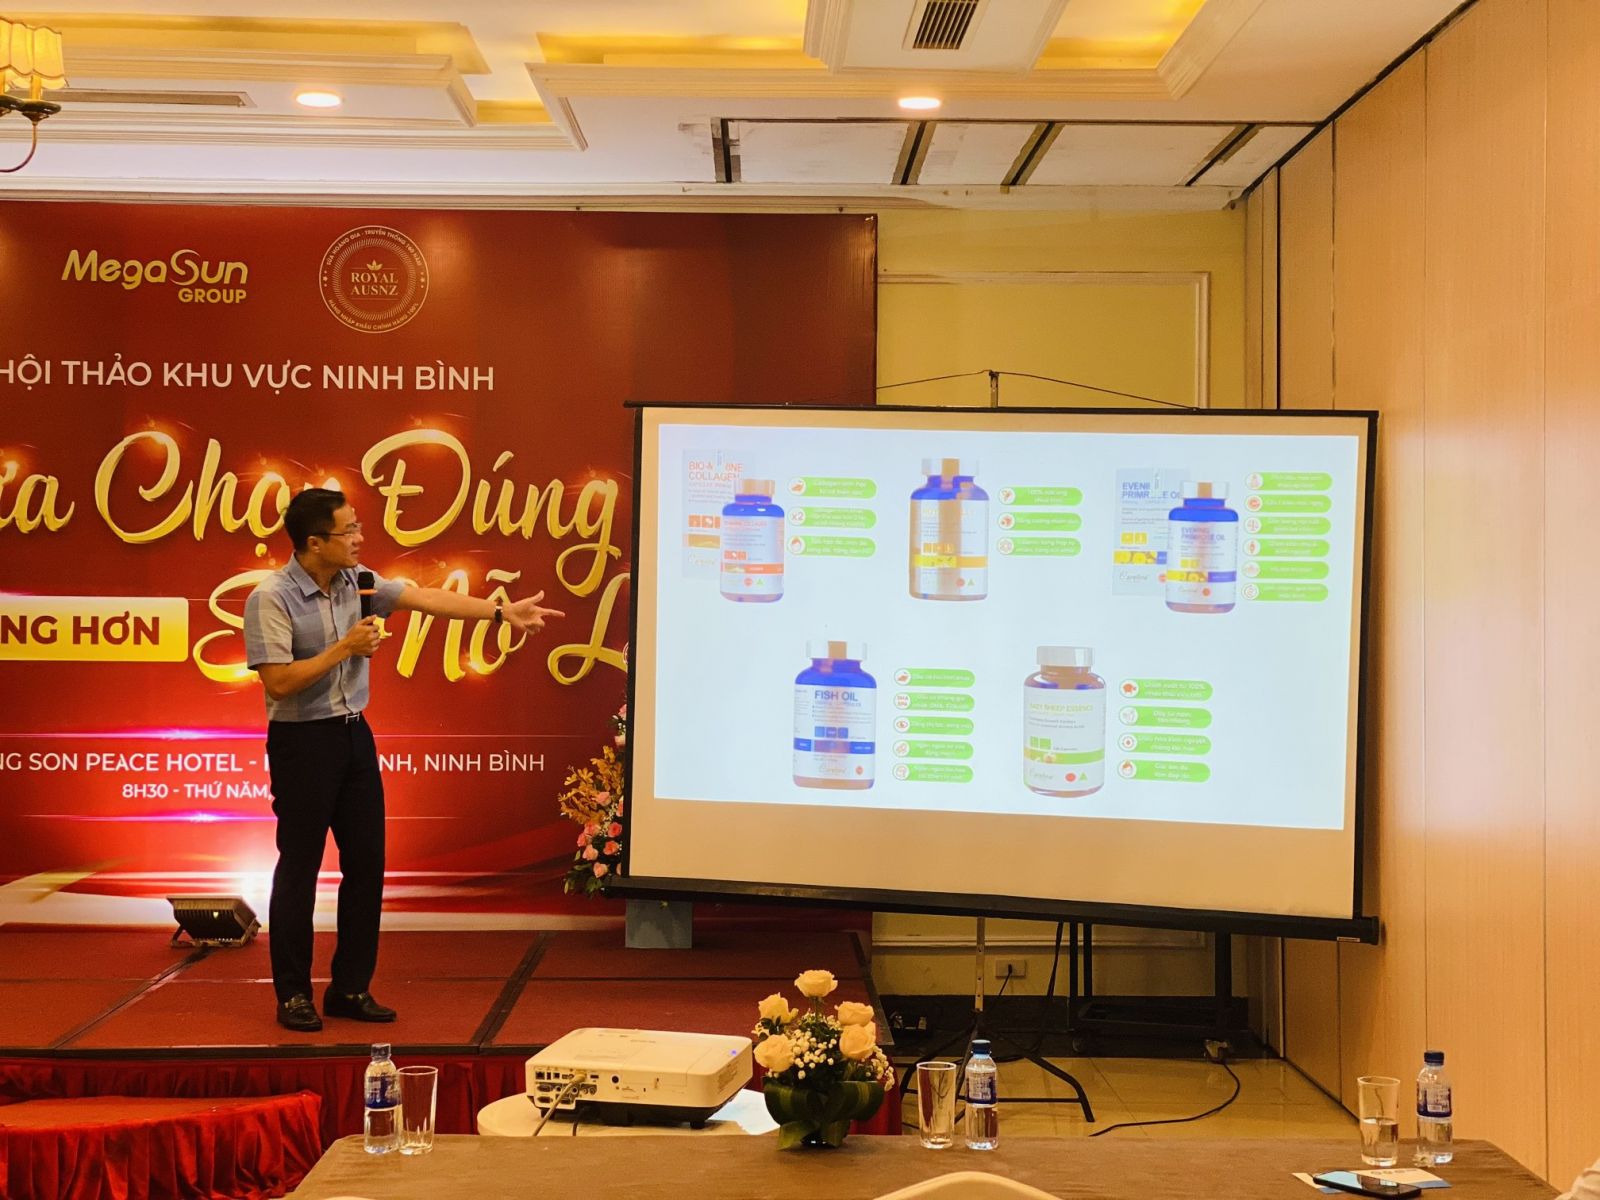 Careline Việt Nam tham dự hội thảo khu vực Ninh Bình